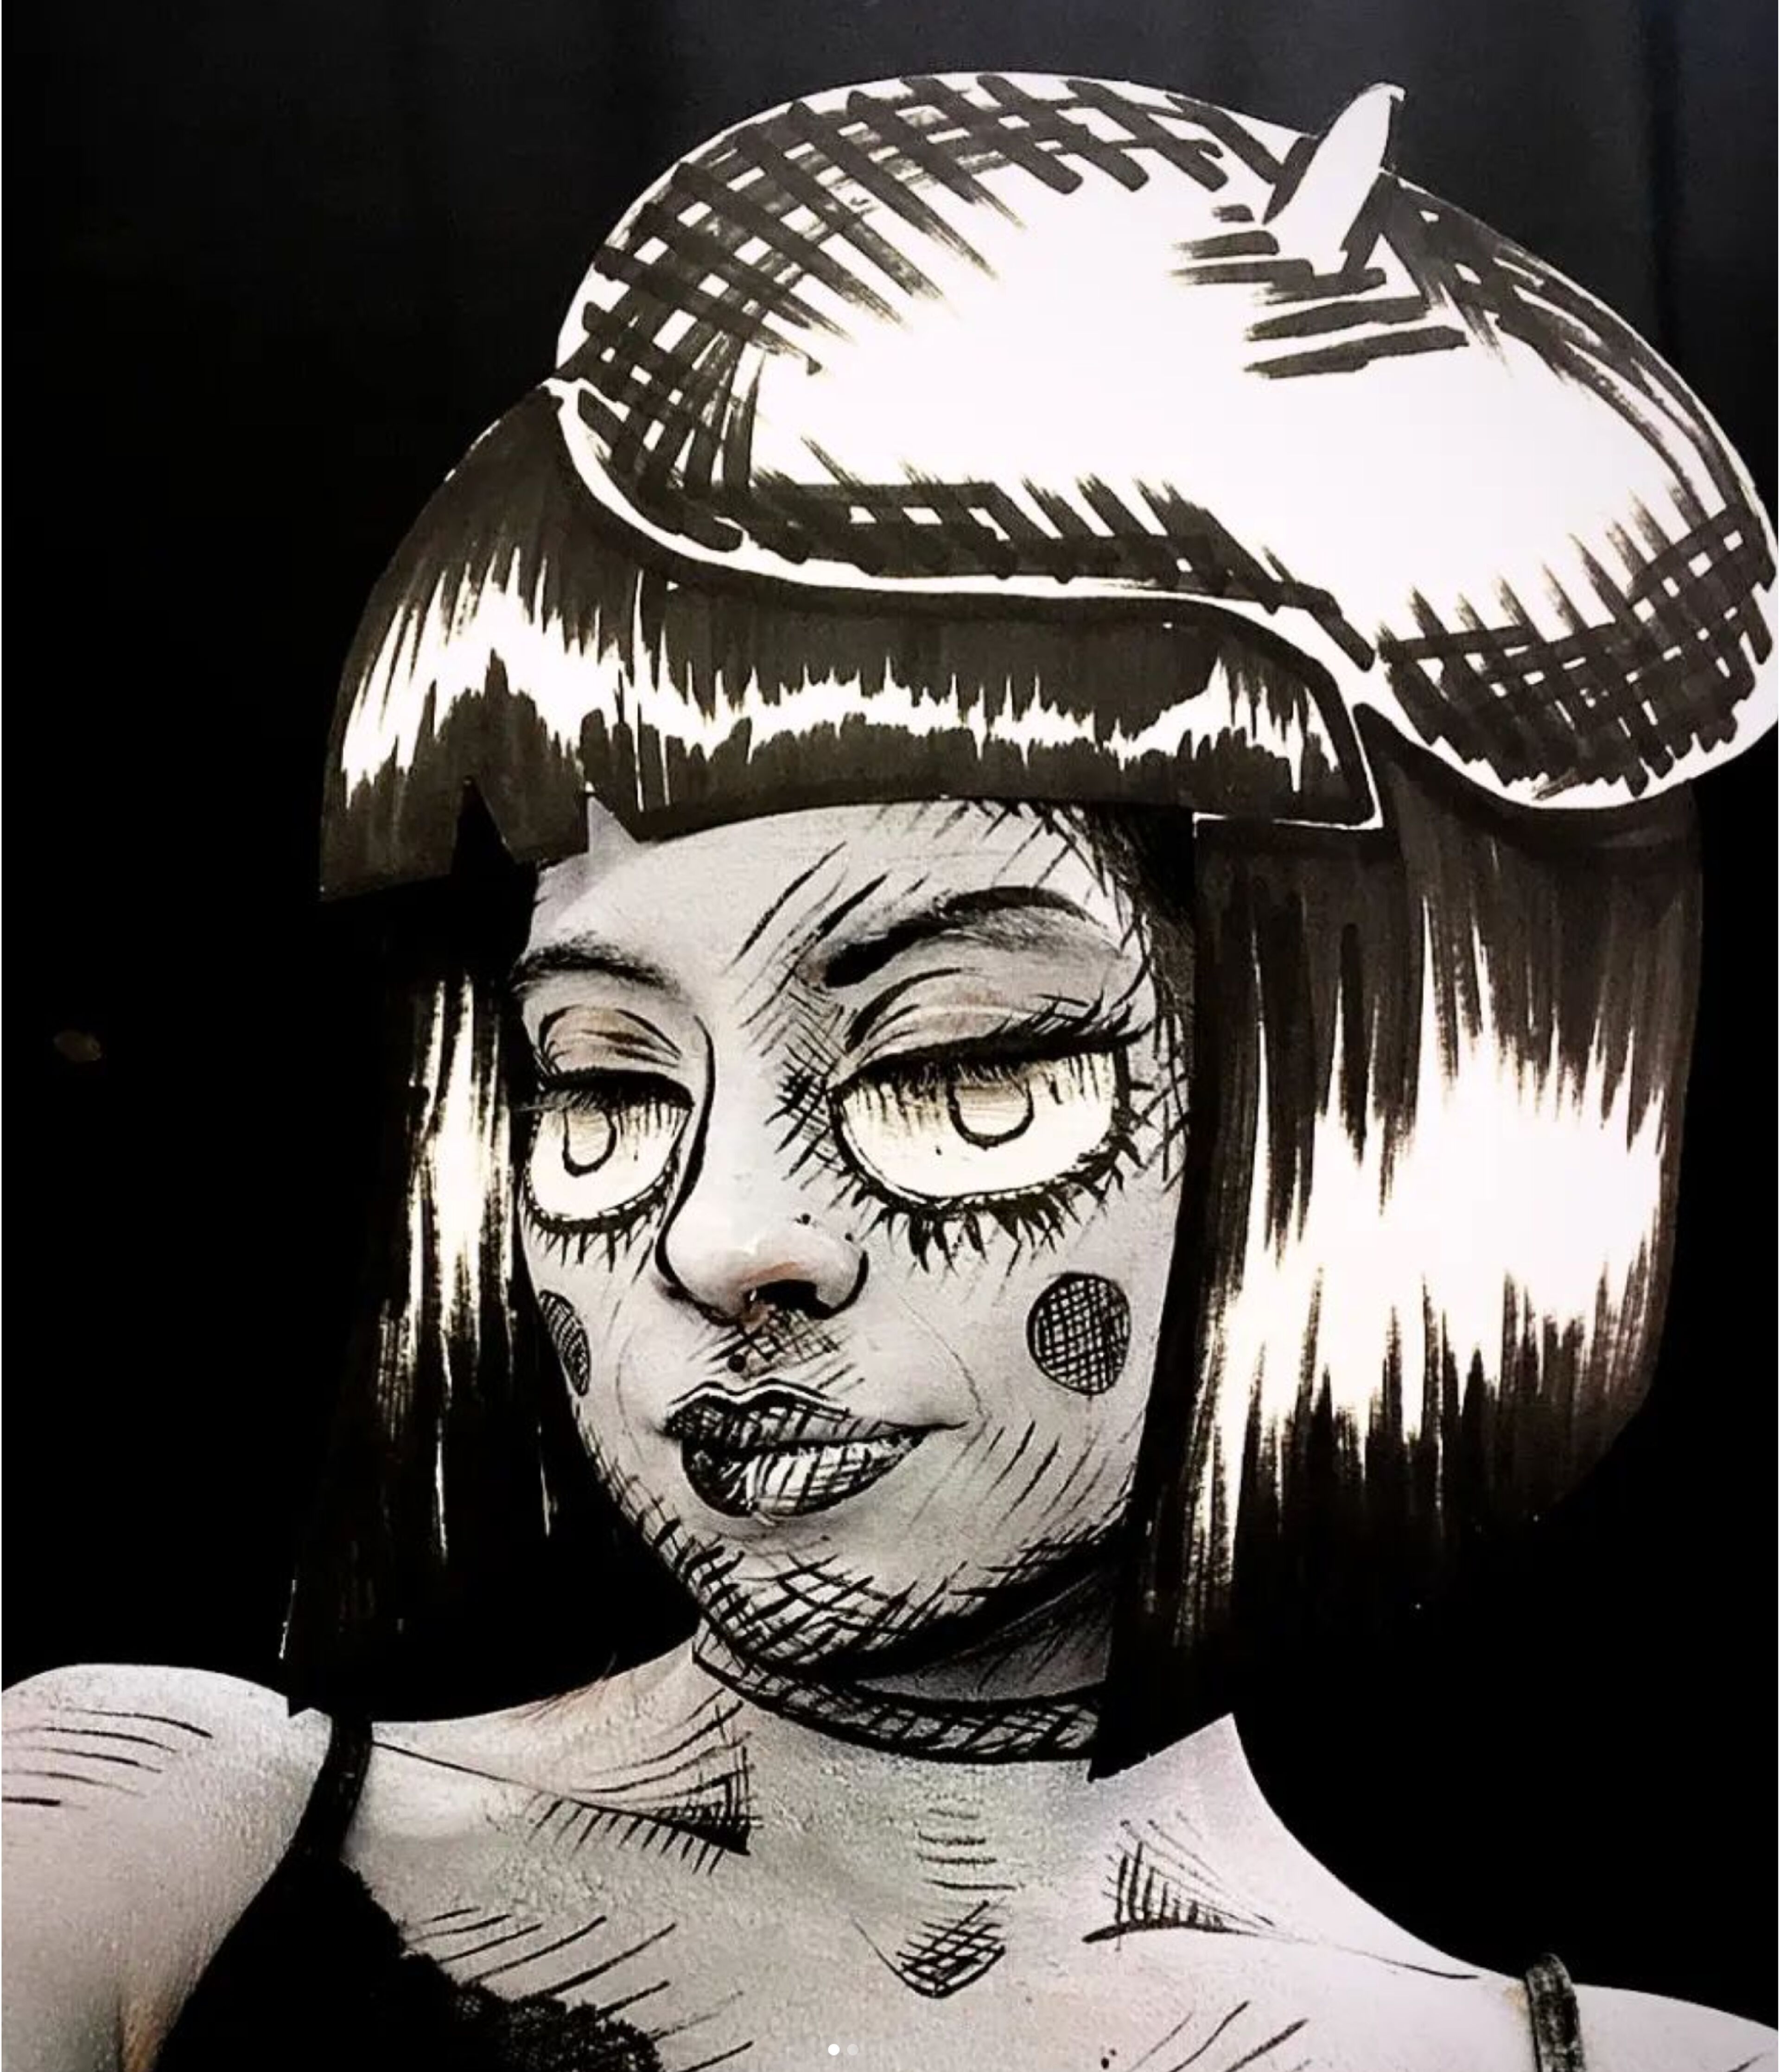 Un retrato estilizado en blanco y negro con influencias de pop art, que presenta a una persona con rasgos exagerados y patrones llamativos.